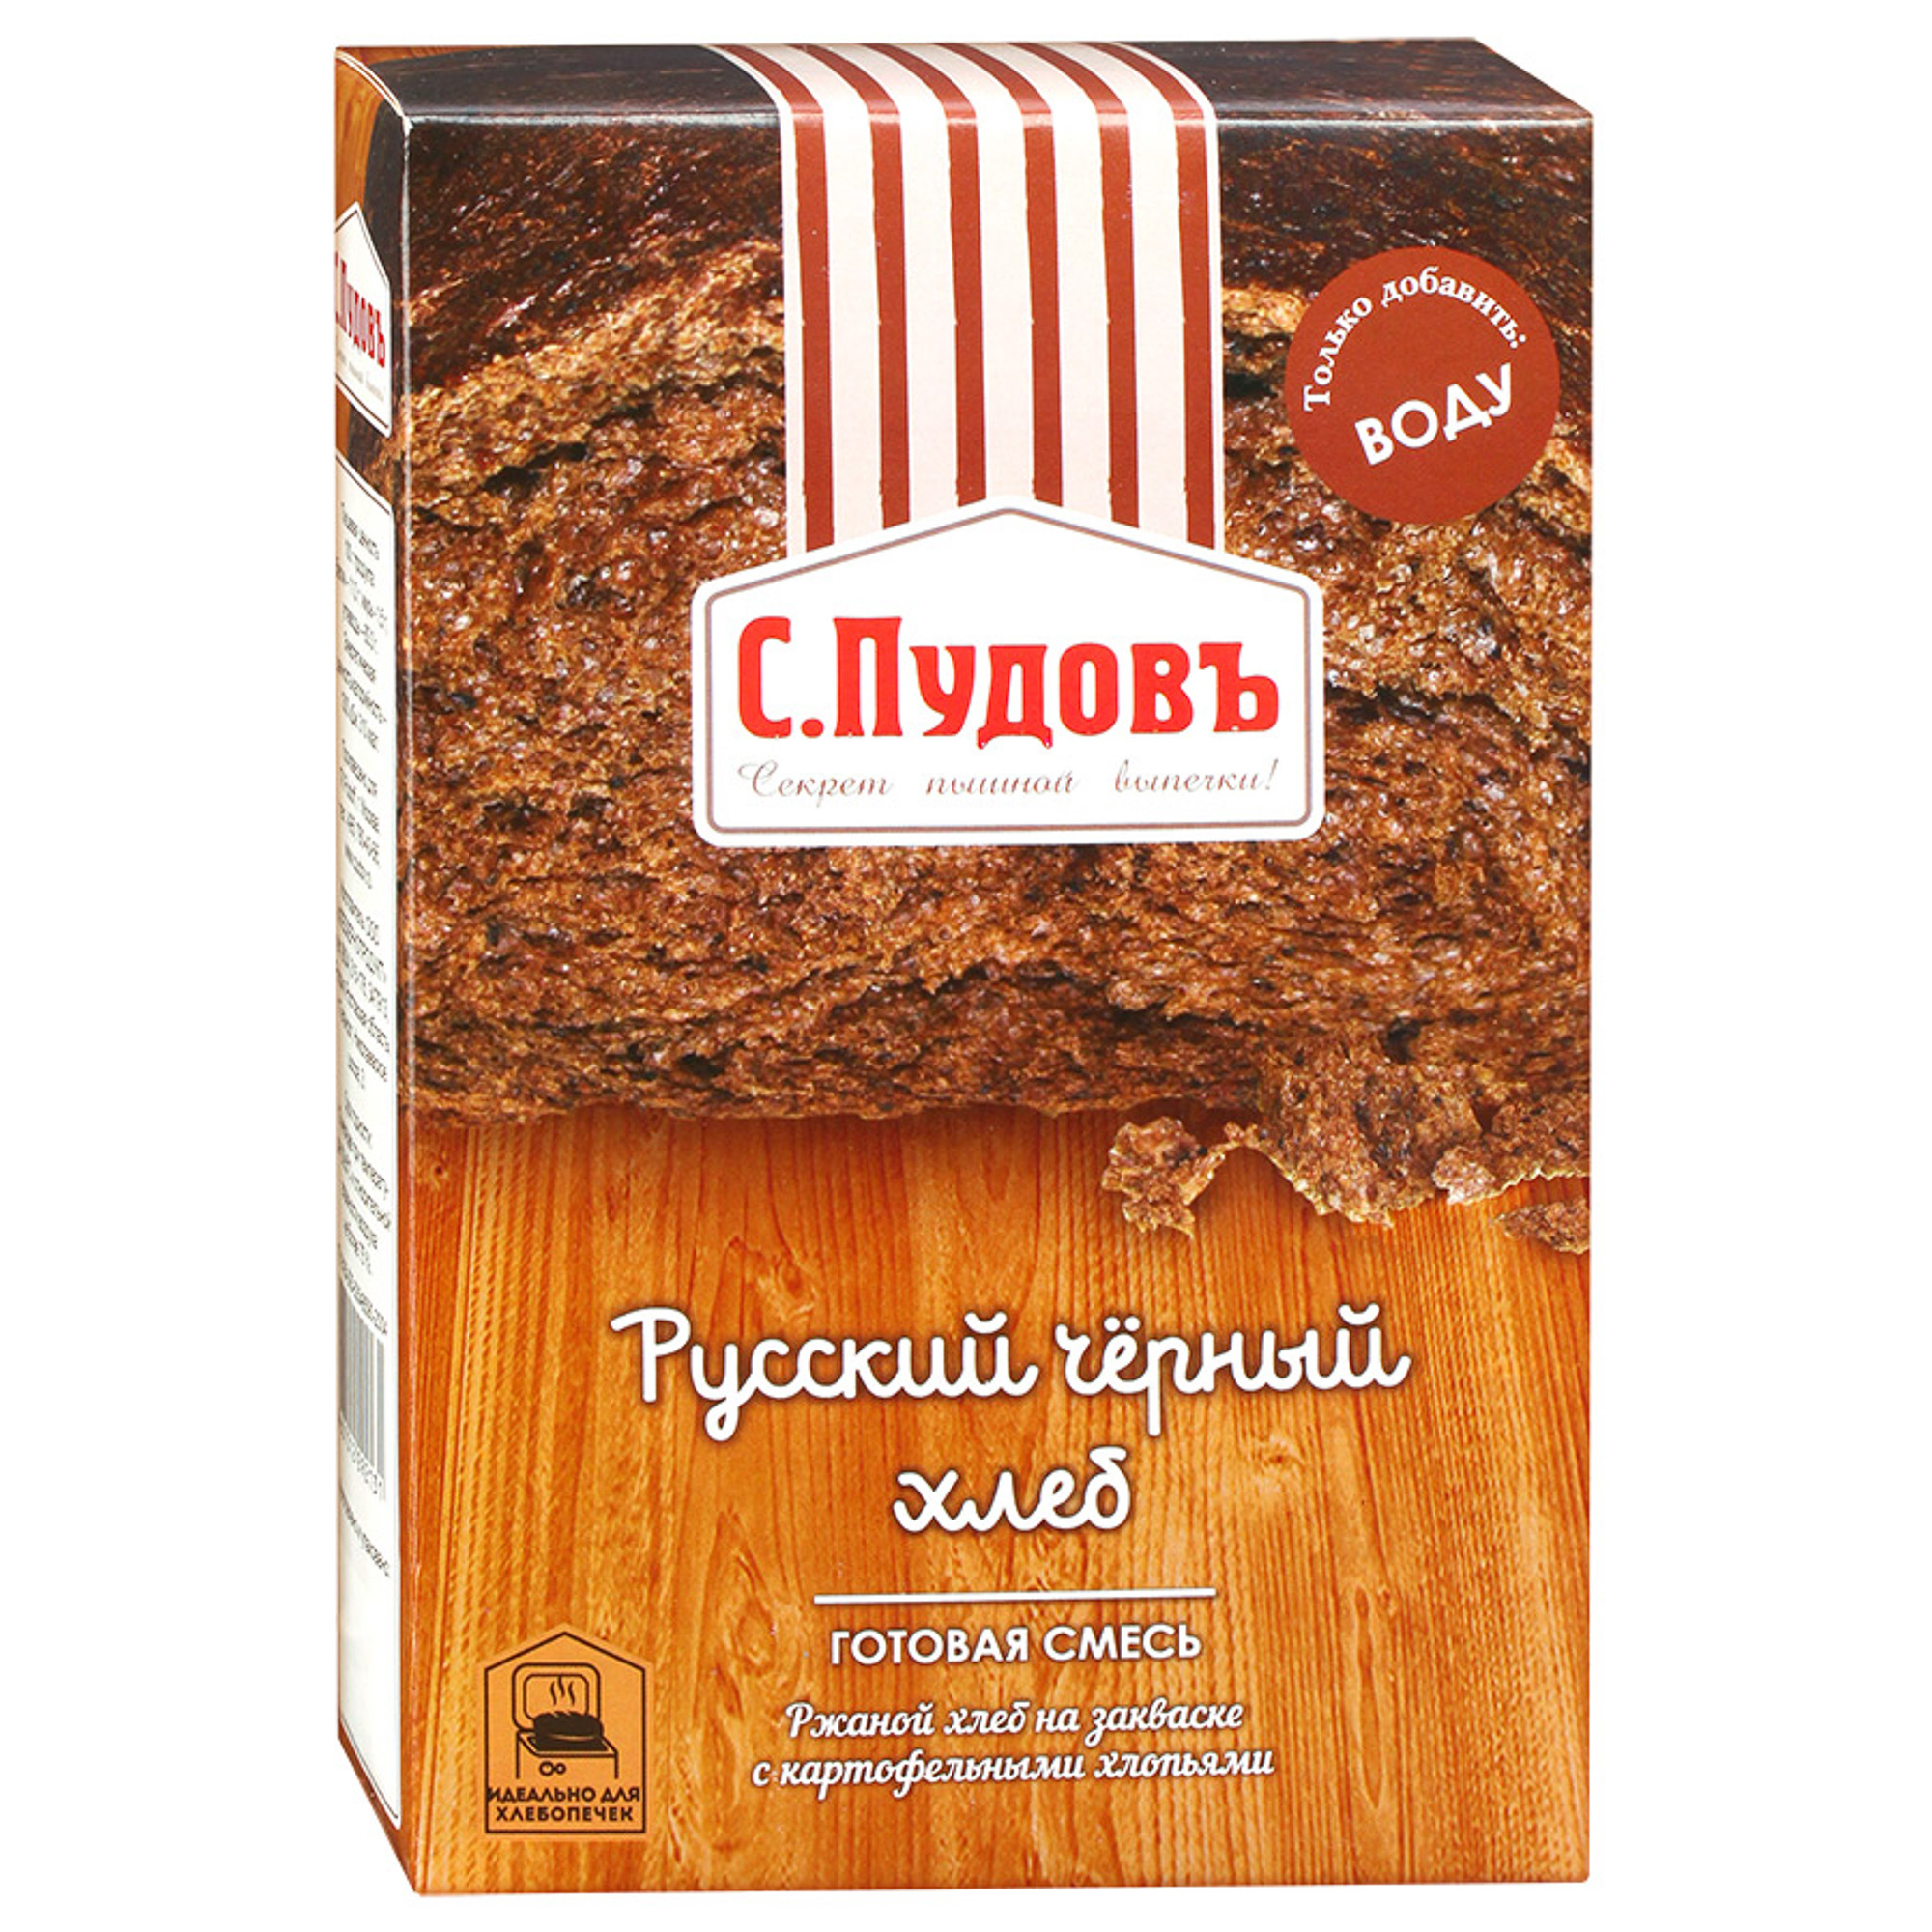 хлебная смесь московский хлеб 500 г с пудовъ Хлебная смесь С.Пудовъ Русский черный хлеб 500 г